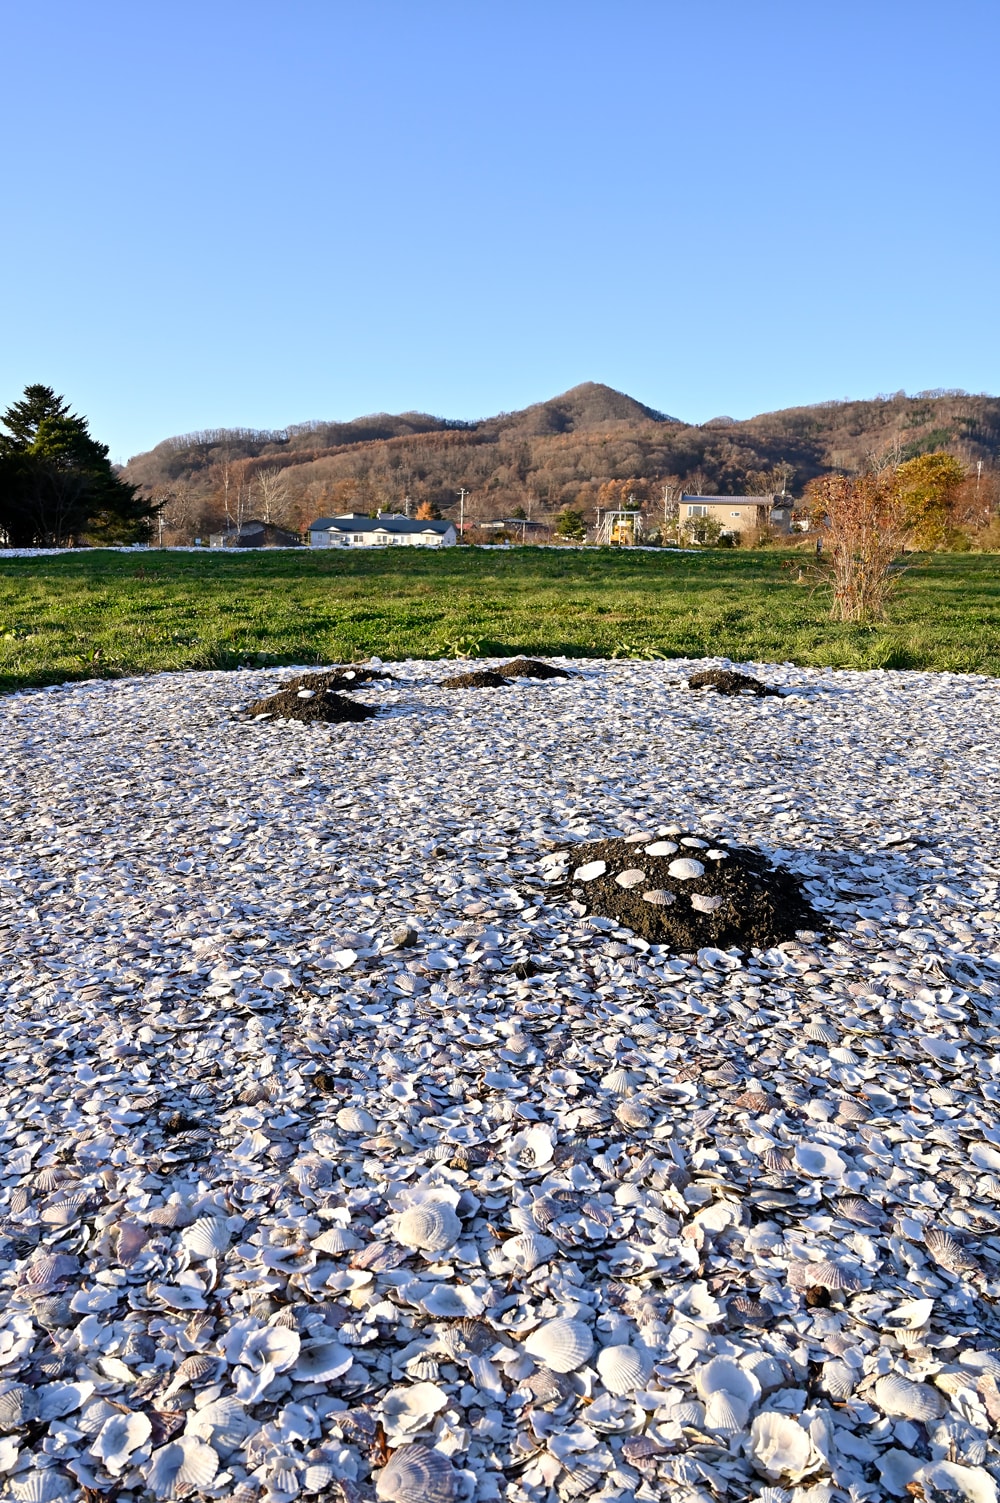 入江貝塚から徒歩5分ほどのところにある高砂貝塚。